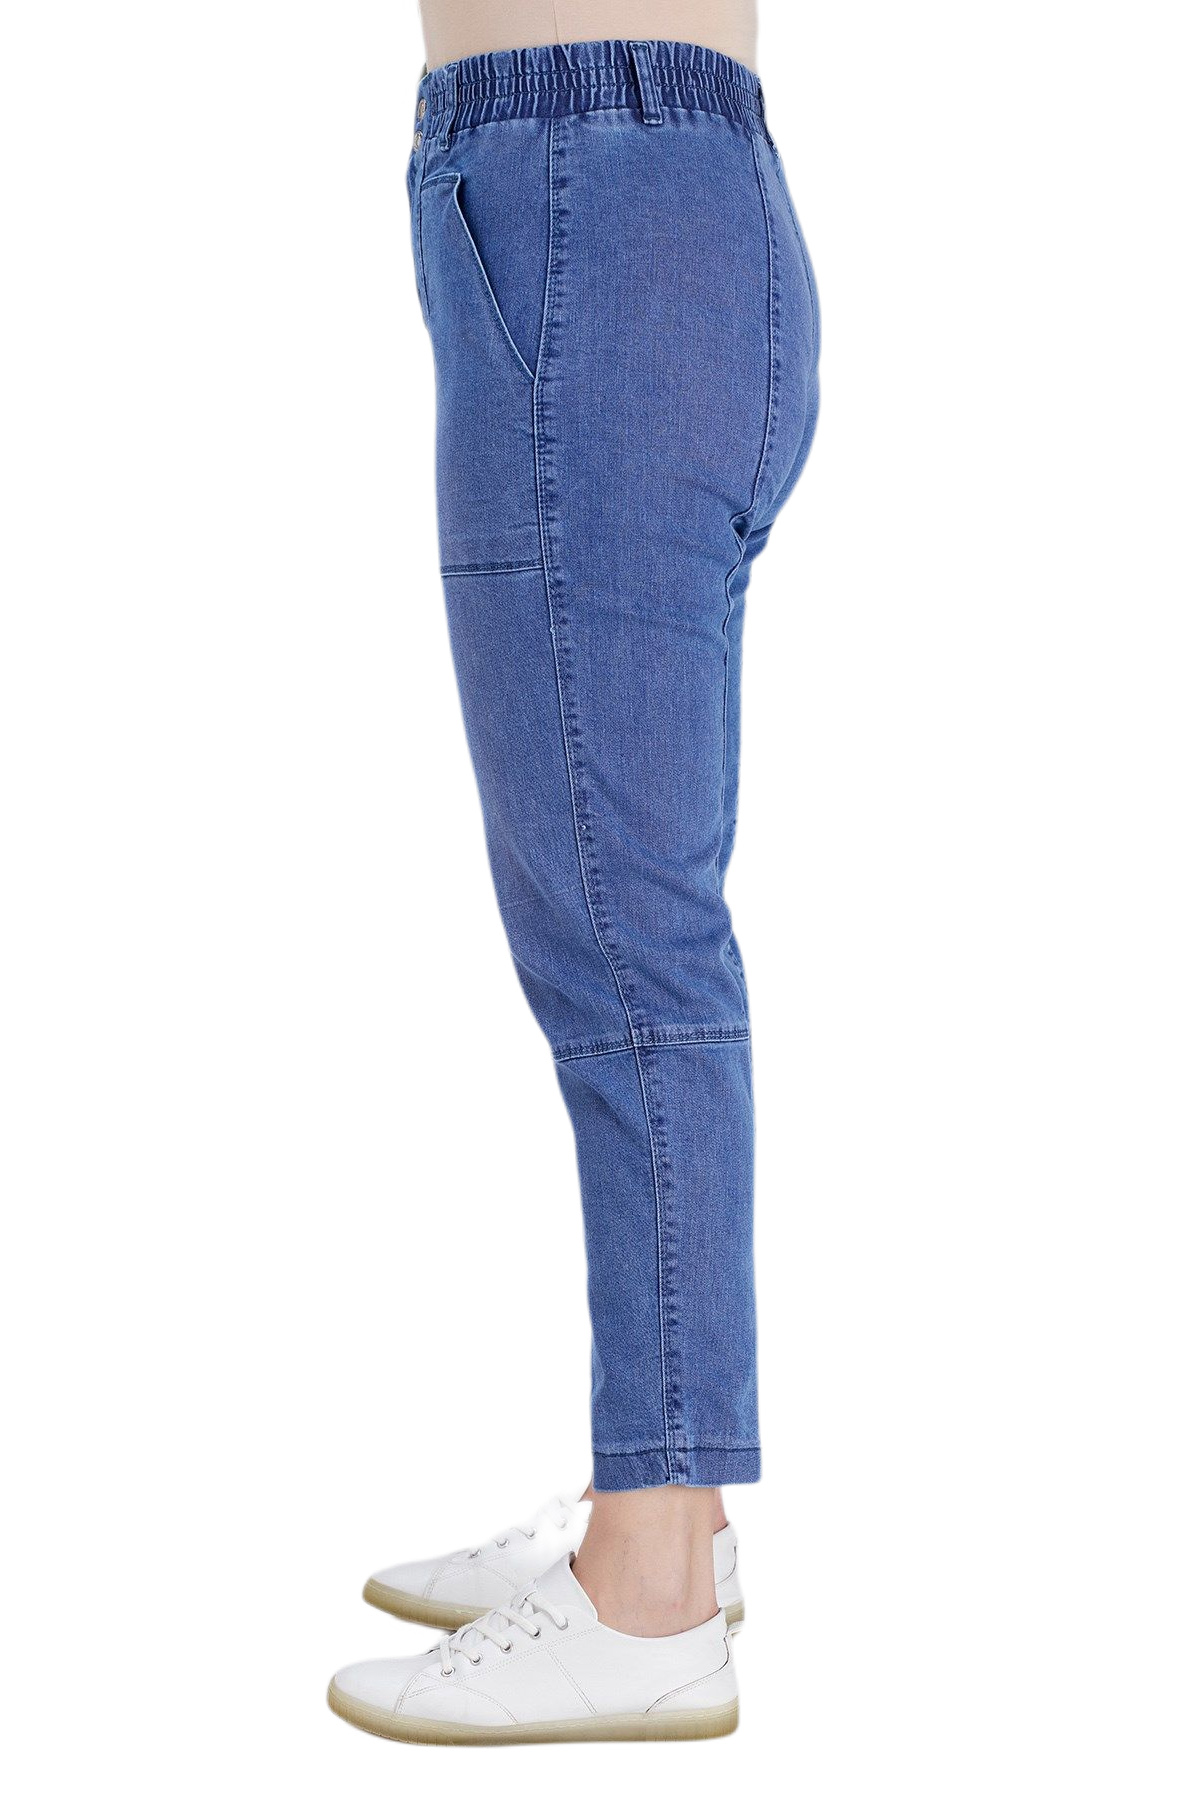 fierte-kadin-buyuk-beden-pantolon-rg1567-jean-elastik-bel-fermuar-kapama-spor-cep-rahat-mavi-30235.jpg